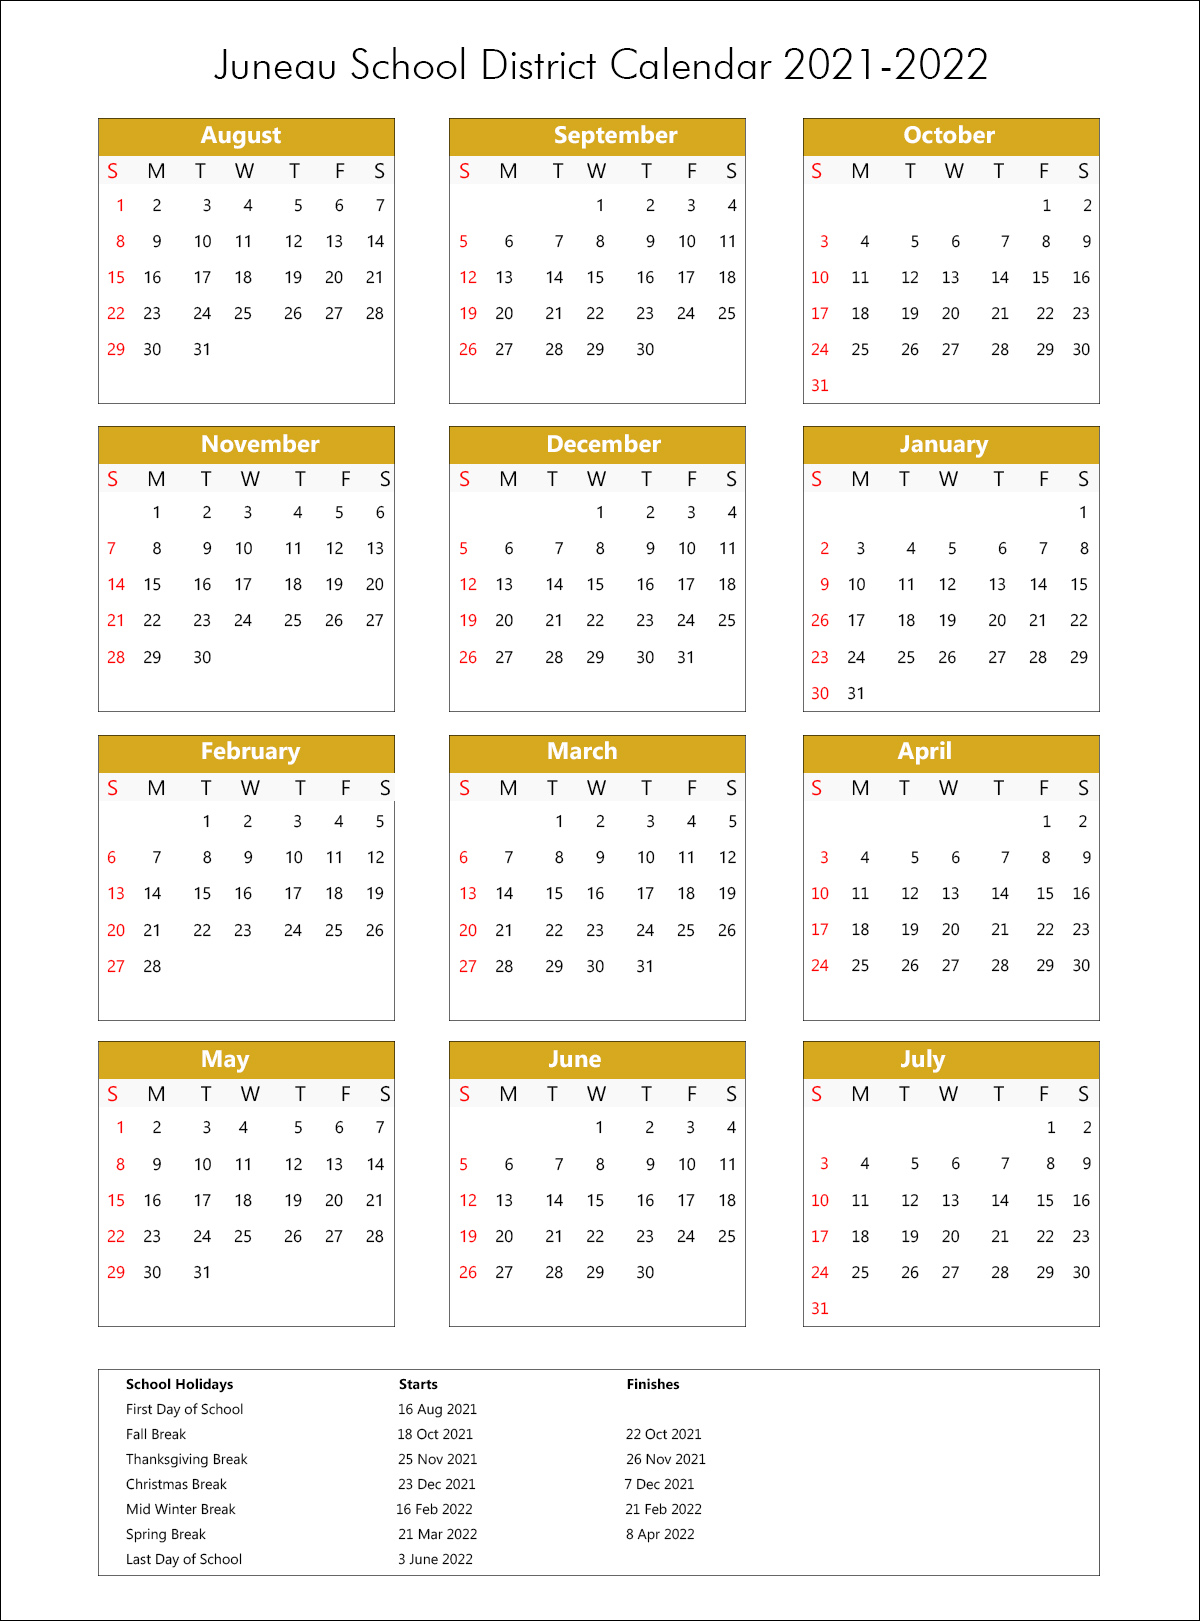 Juneau School District Calendar Holidays 2021 2022